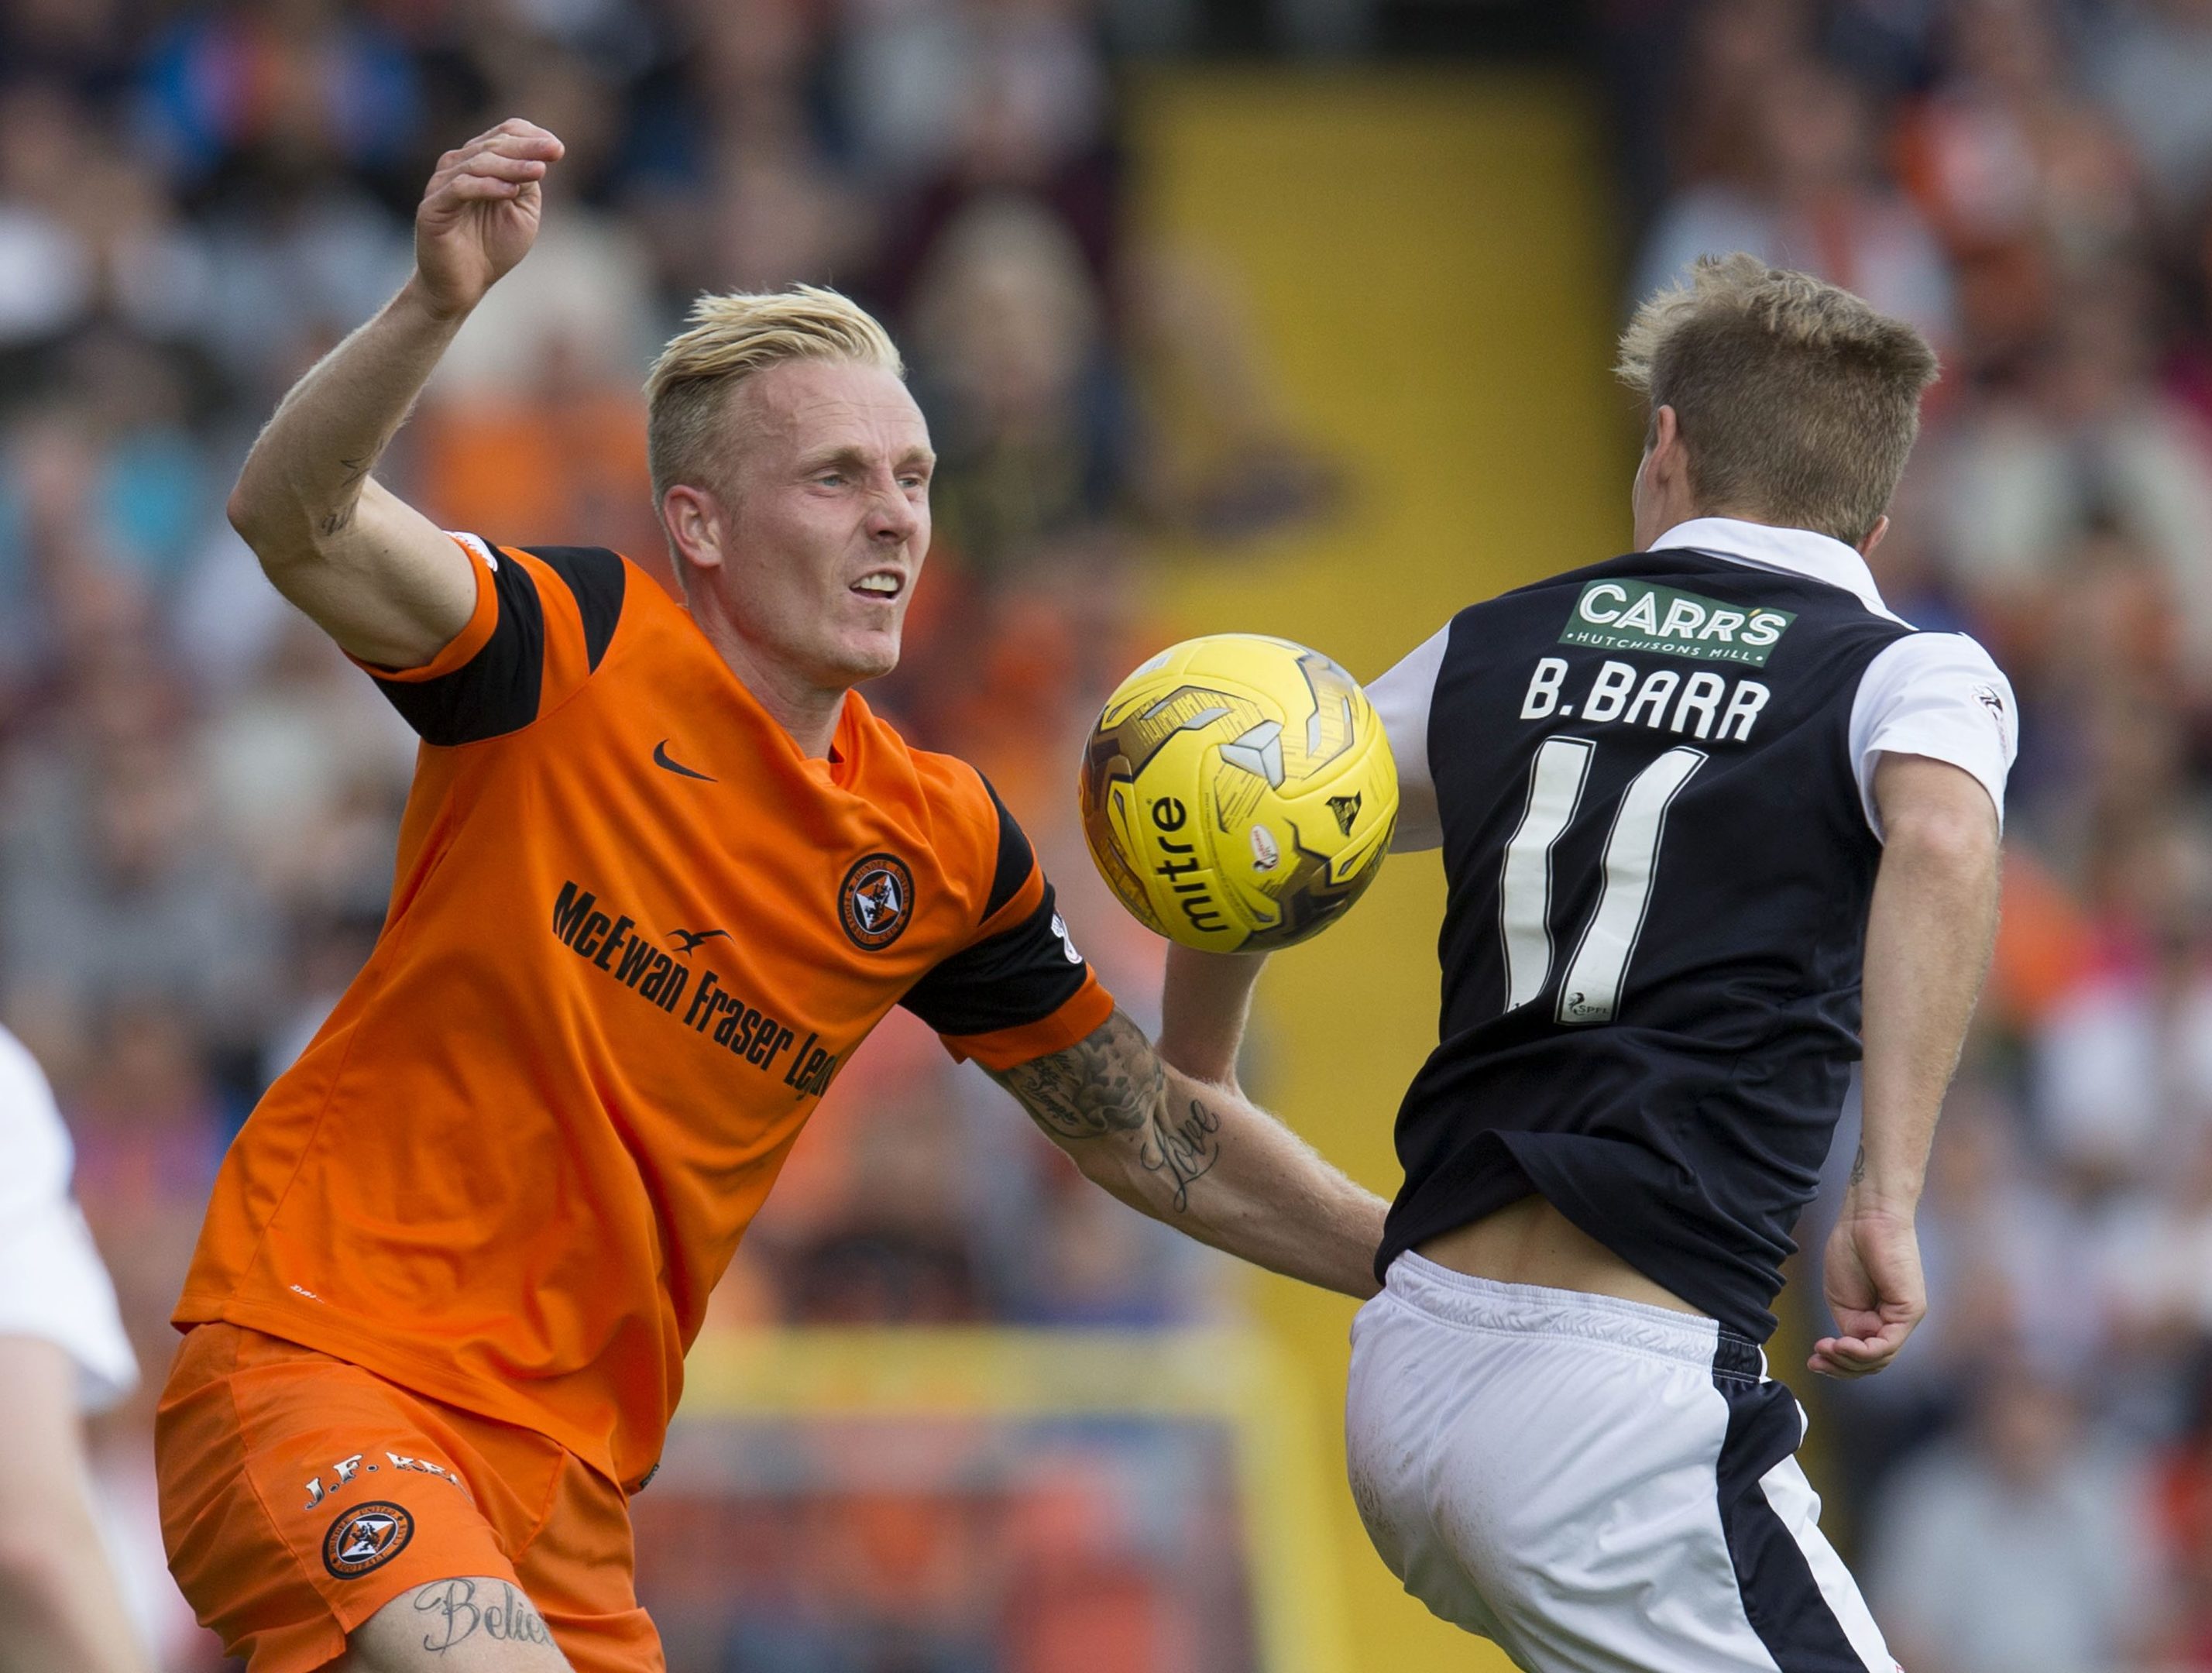 Dundee United's Nick van der Velden challenges Raith's Bobby Barr.